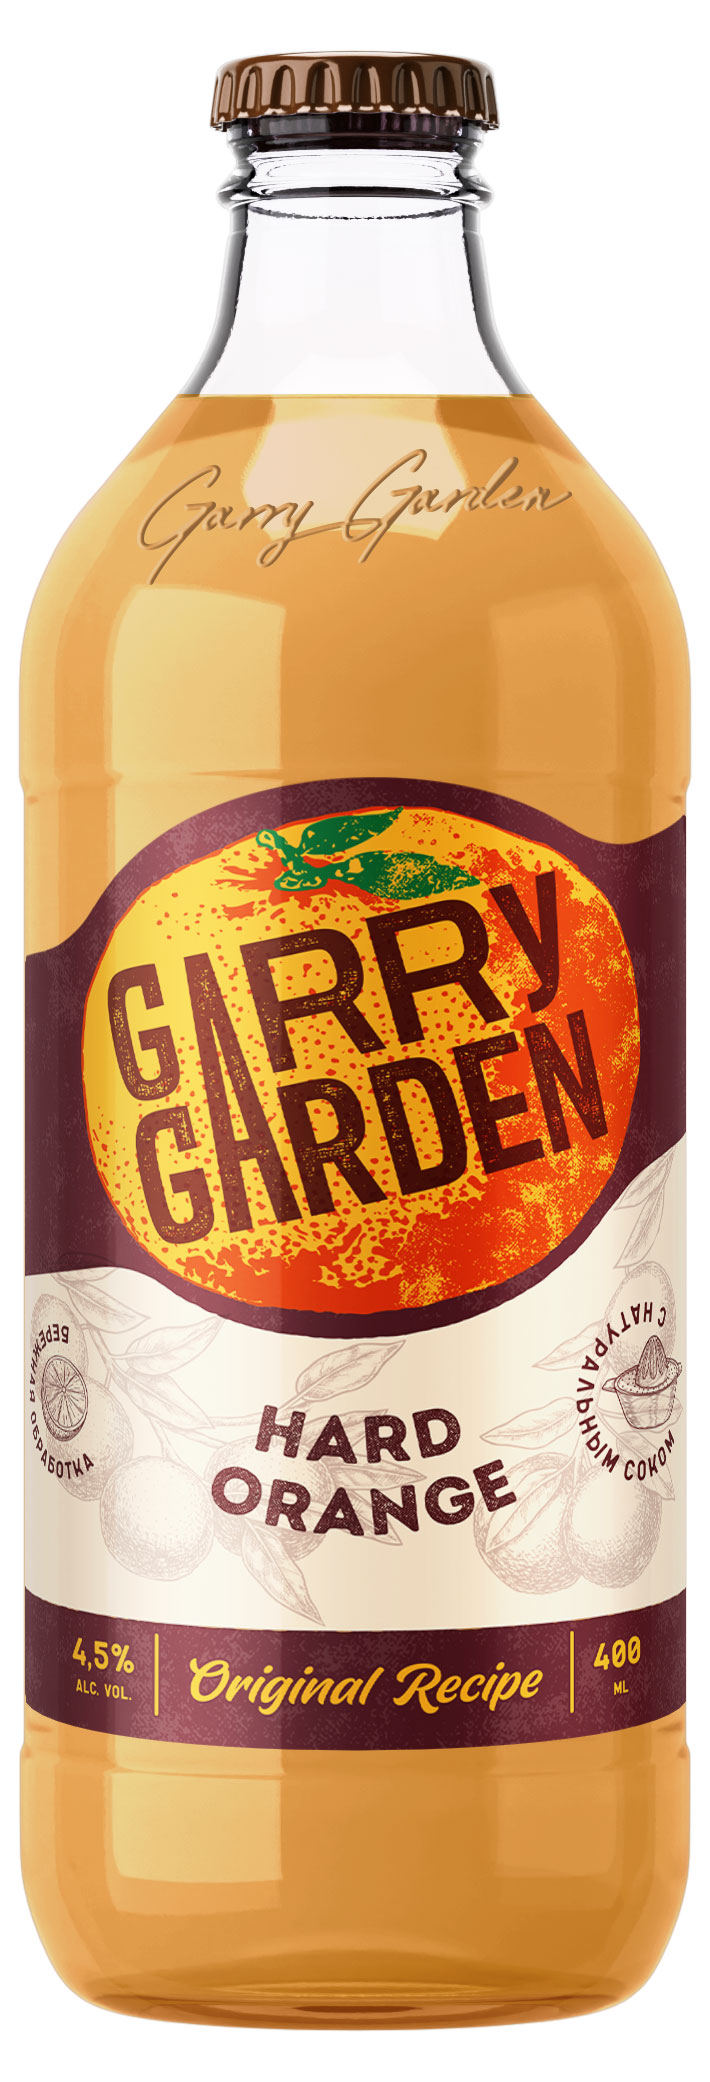 Пивной напиток Garry garden Апельсин 4,5%, 400 мл